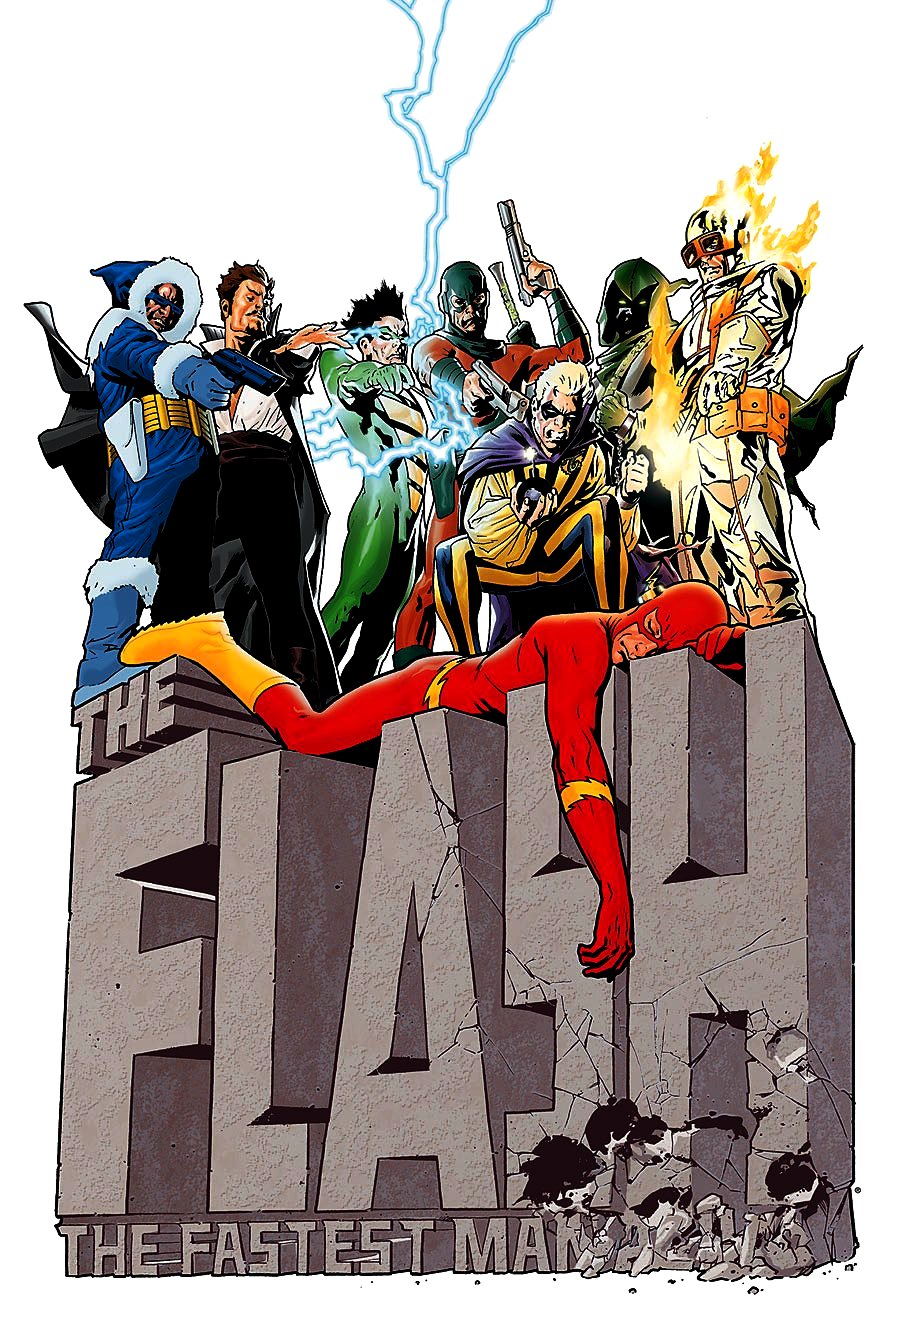 The Flash (comic book) - Wikipedia